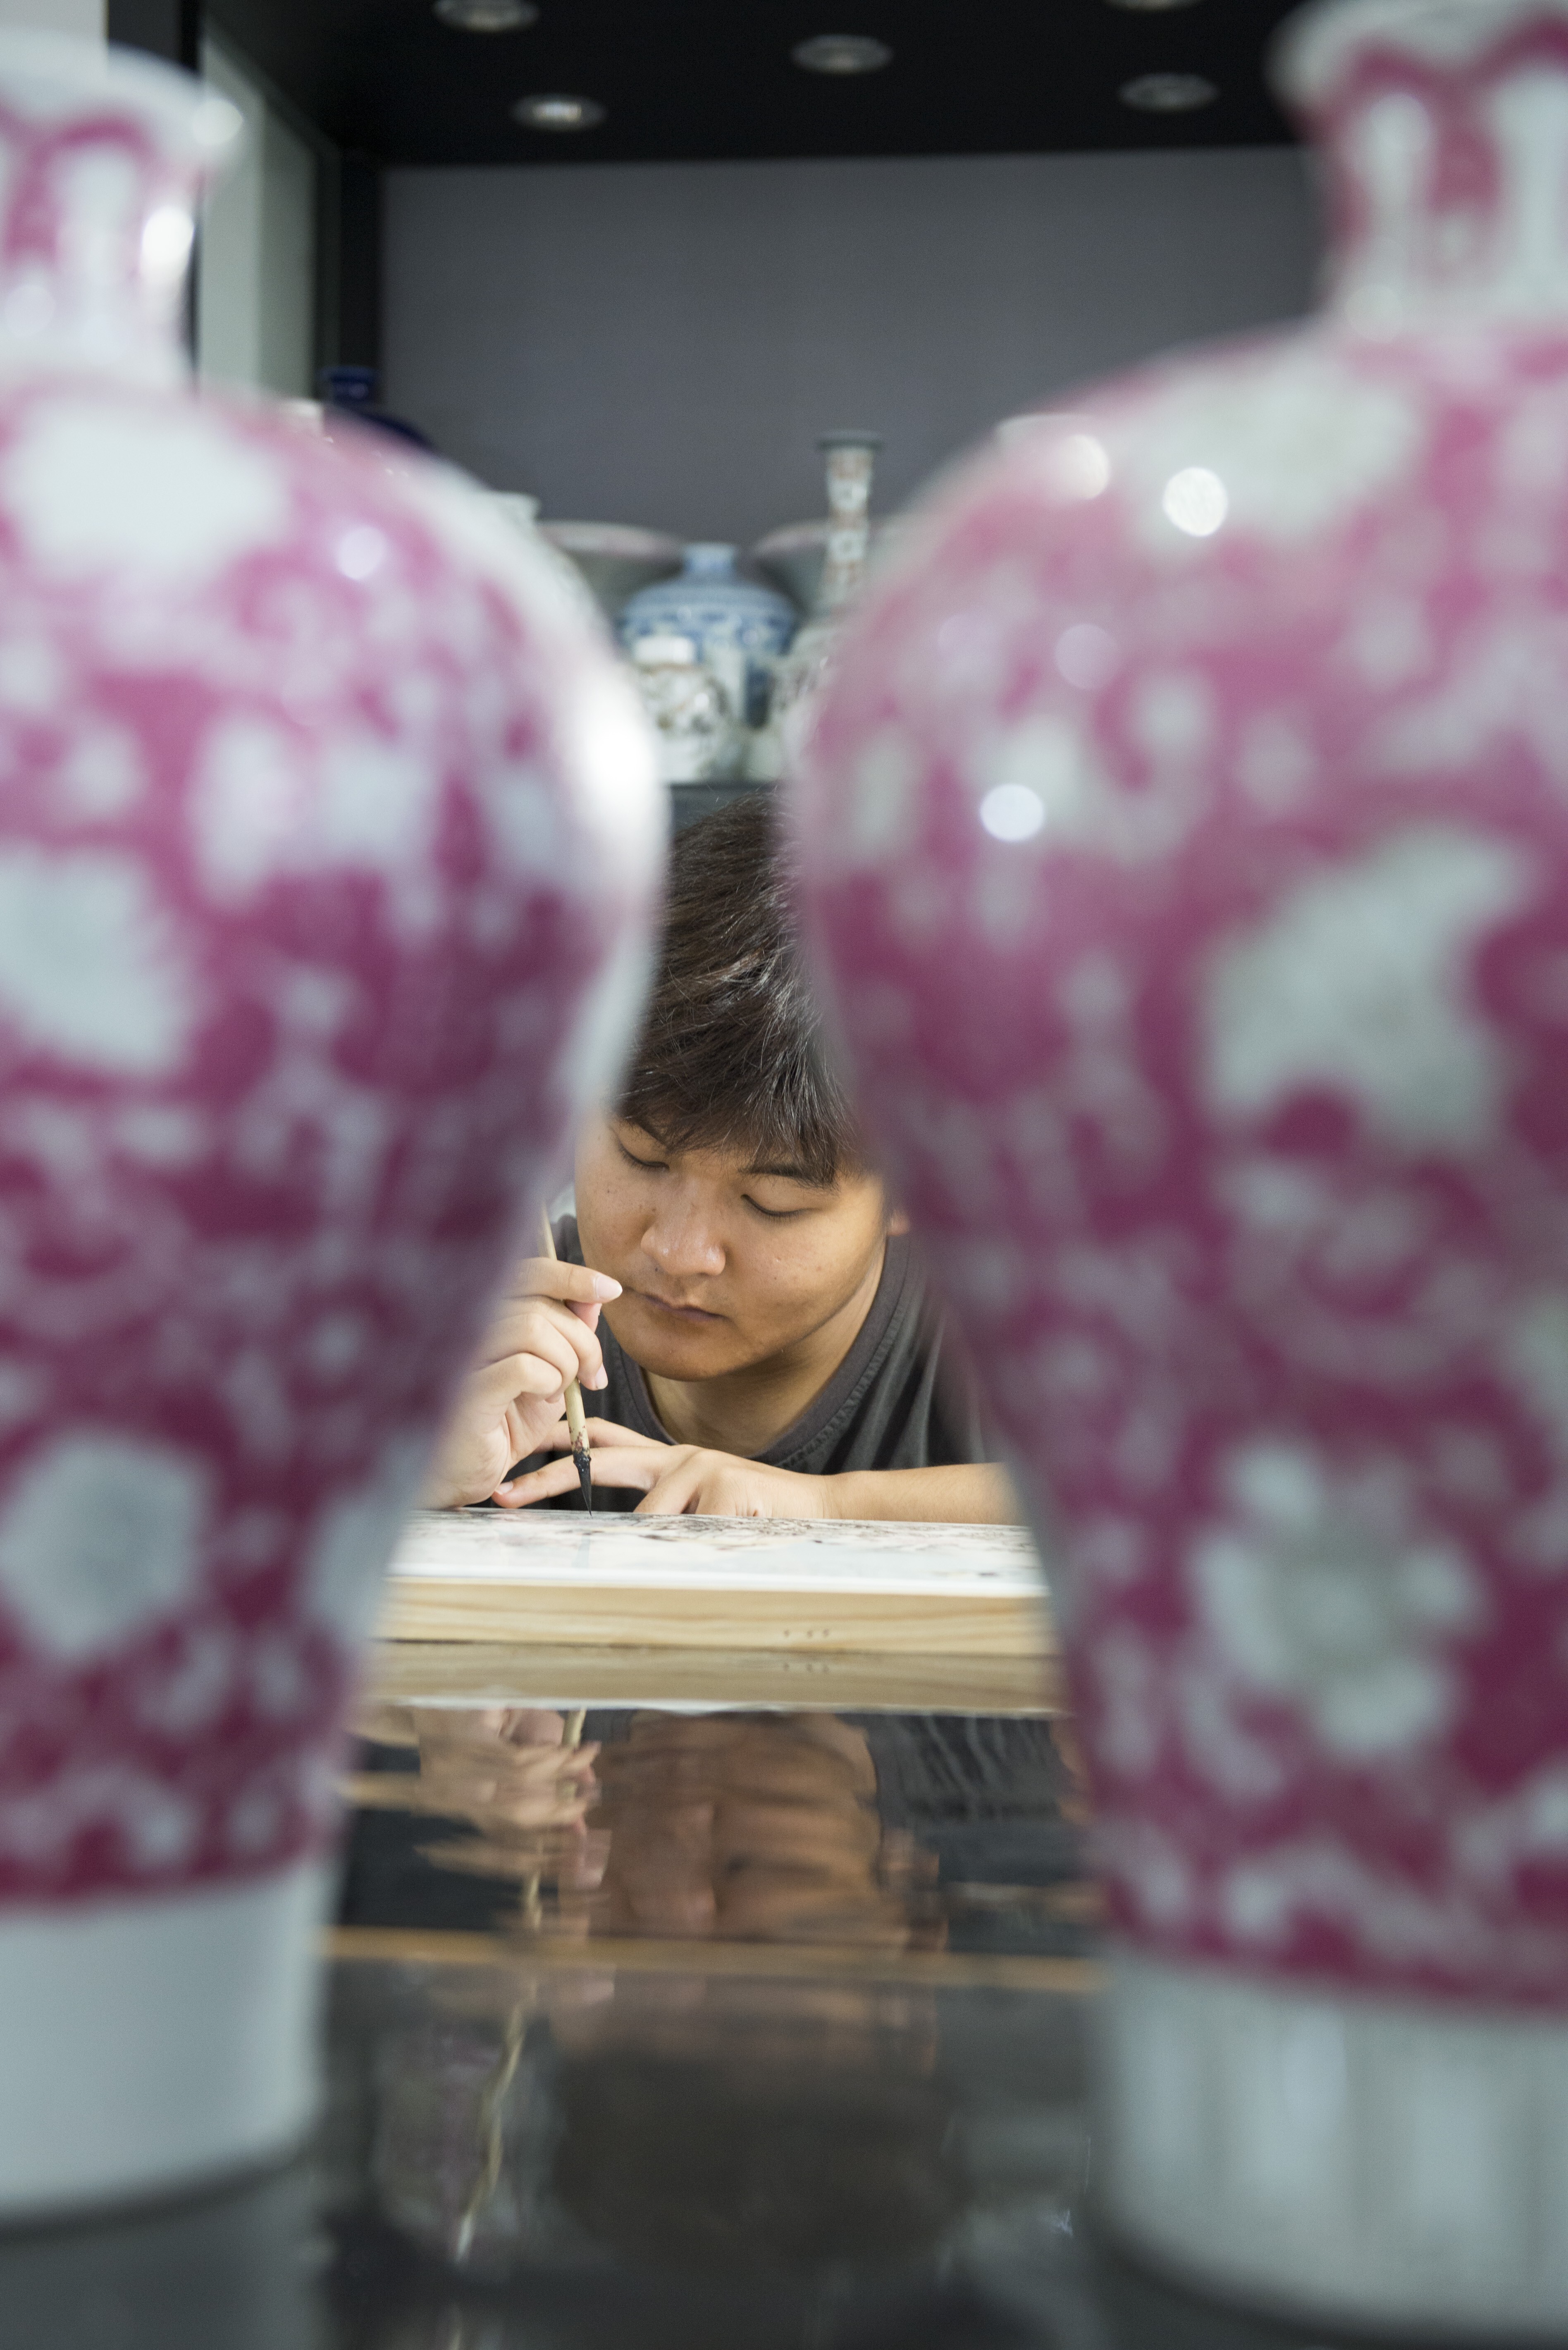 An artisan at work in Jingdezhen, Jiangxi province. Photo: Zigor Aldama